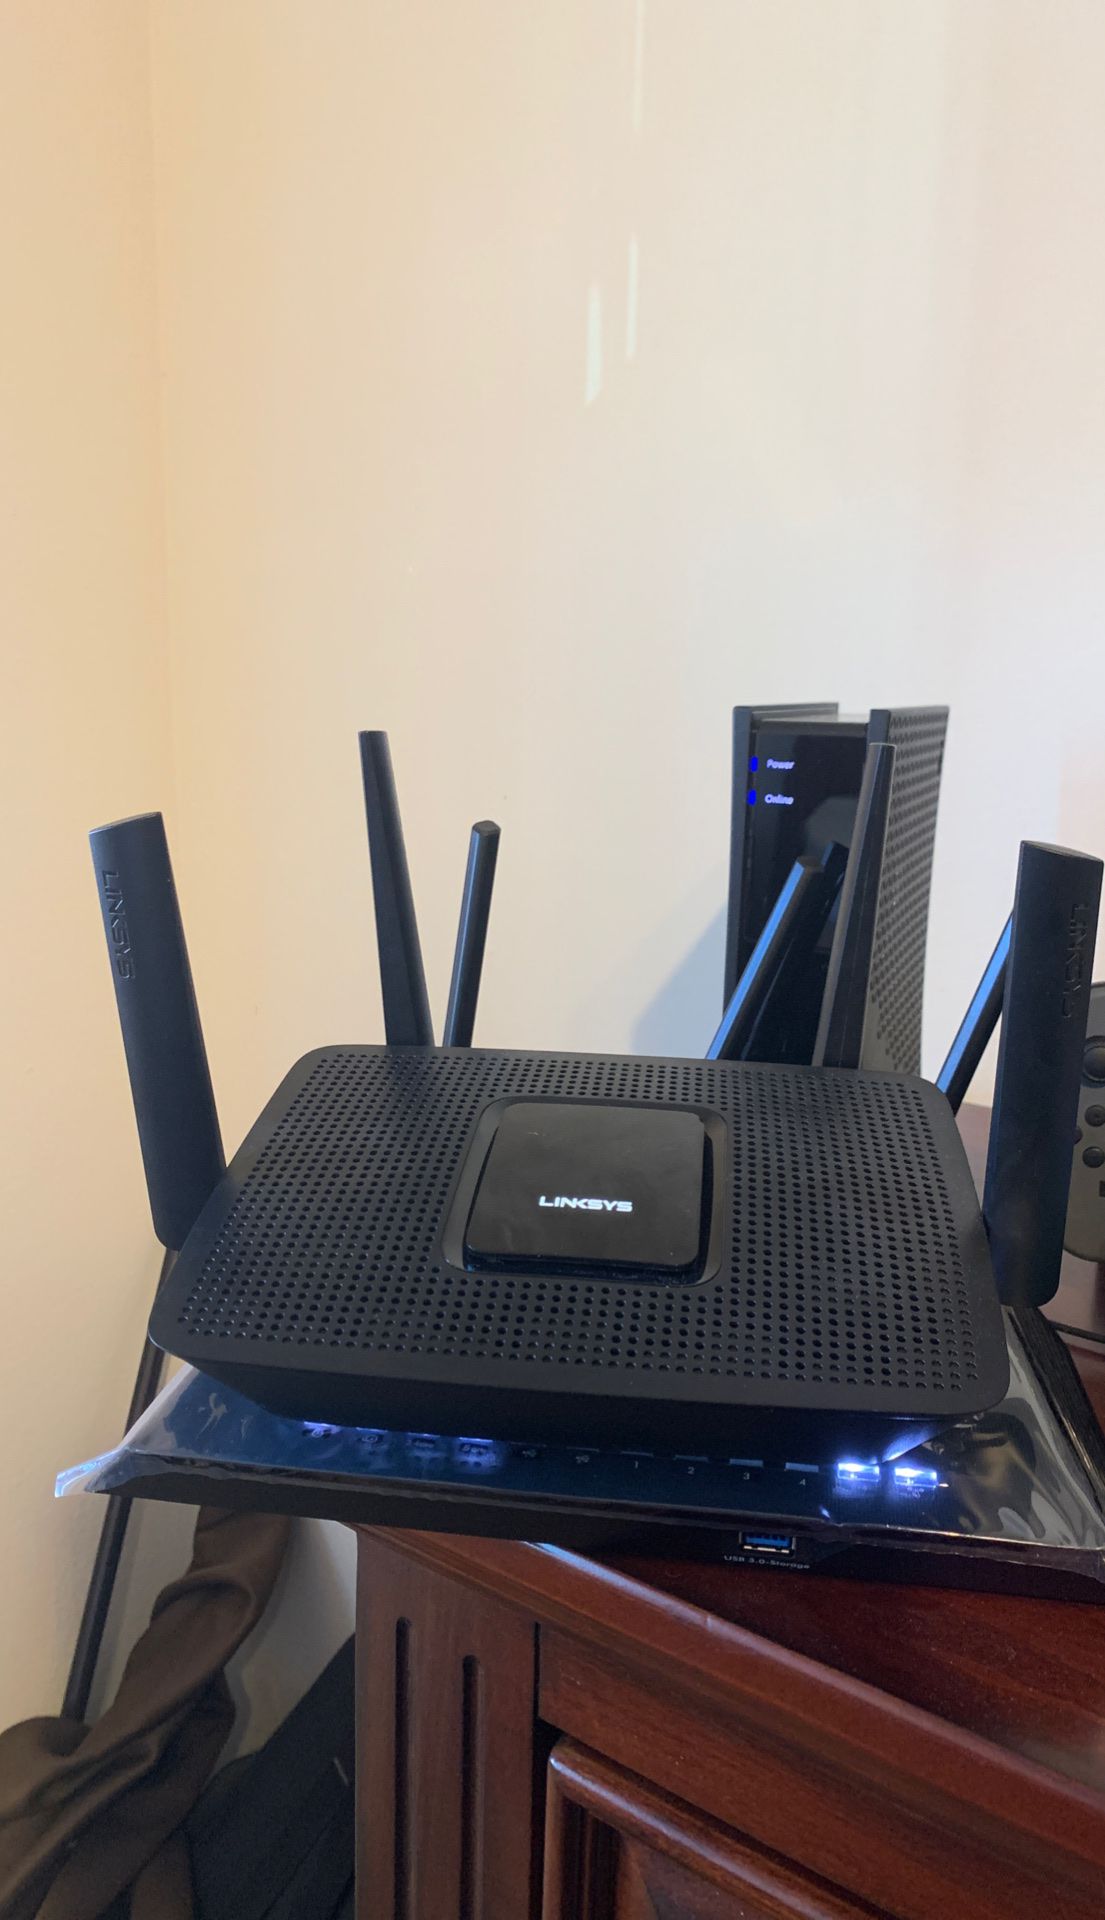 Linksy wifi router